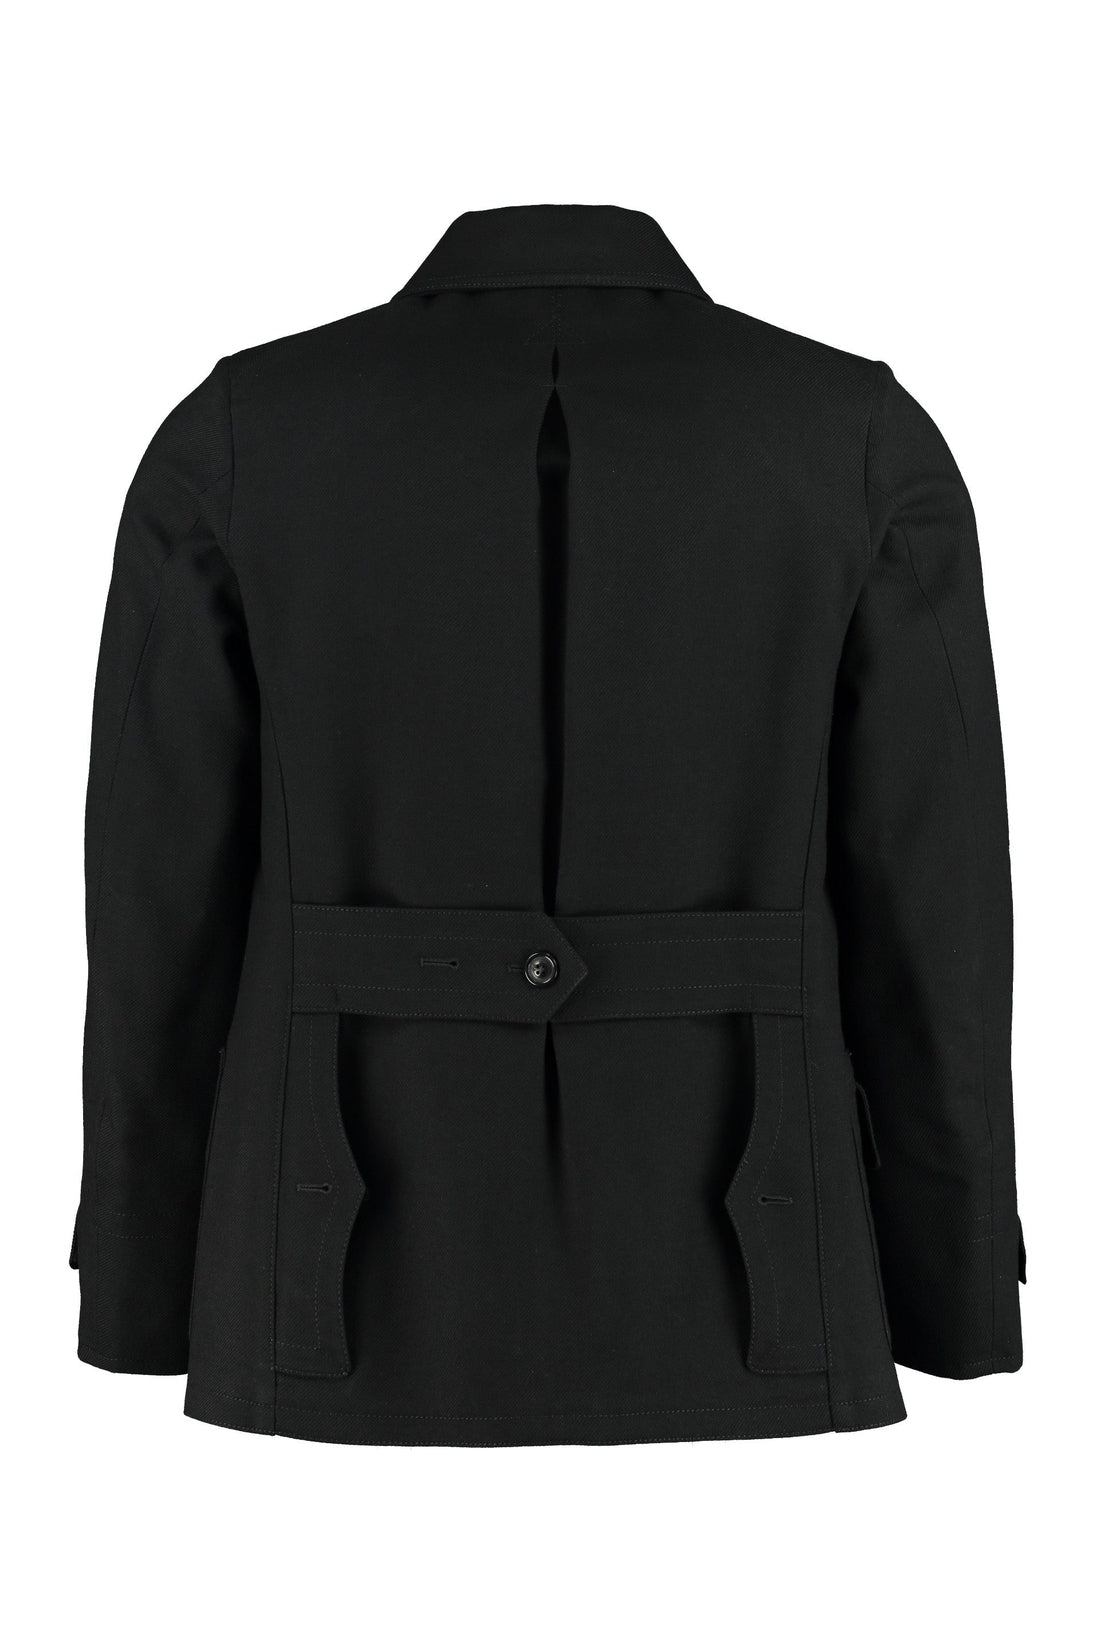 Maison Margiela-OUTLET-SALE-Multi-pocket jacket-ARCHIVIST